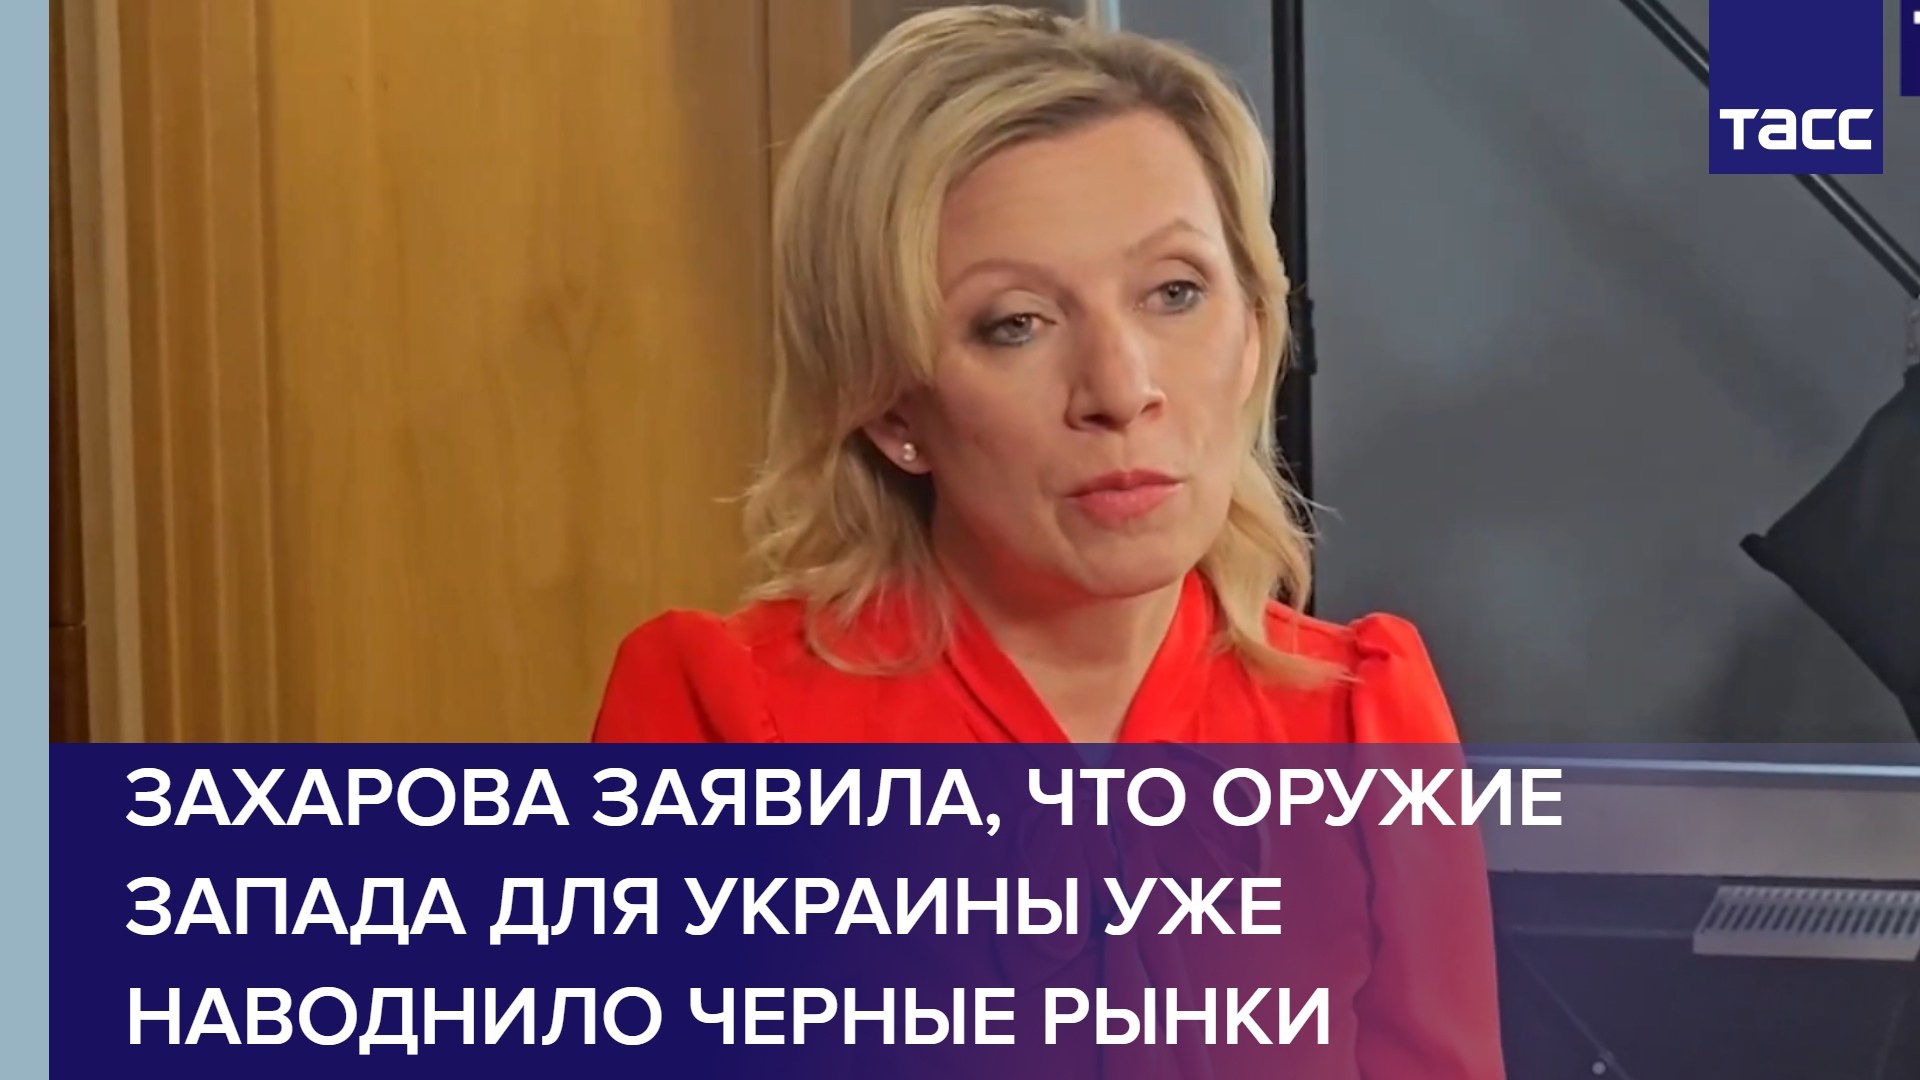 Захарова заявила, что оружие Запада для Украины уже наводнило черные рынки